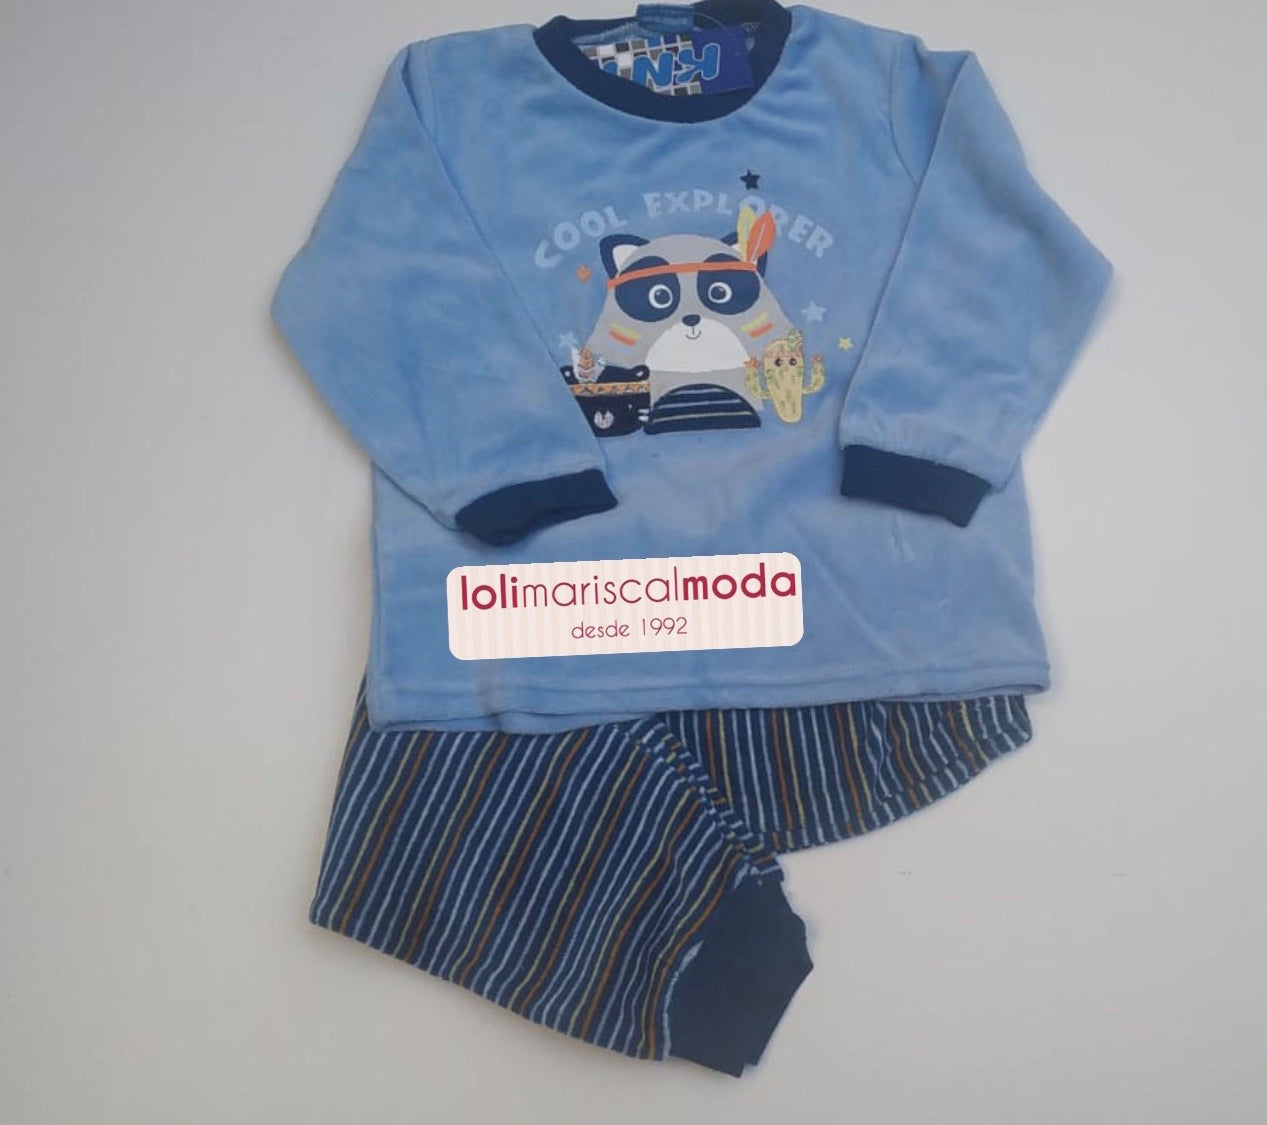 Pijamas Invierno Koala KN140 lolimariscalmoda 0.00